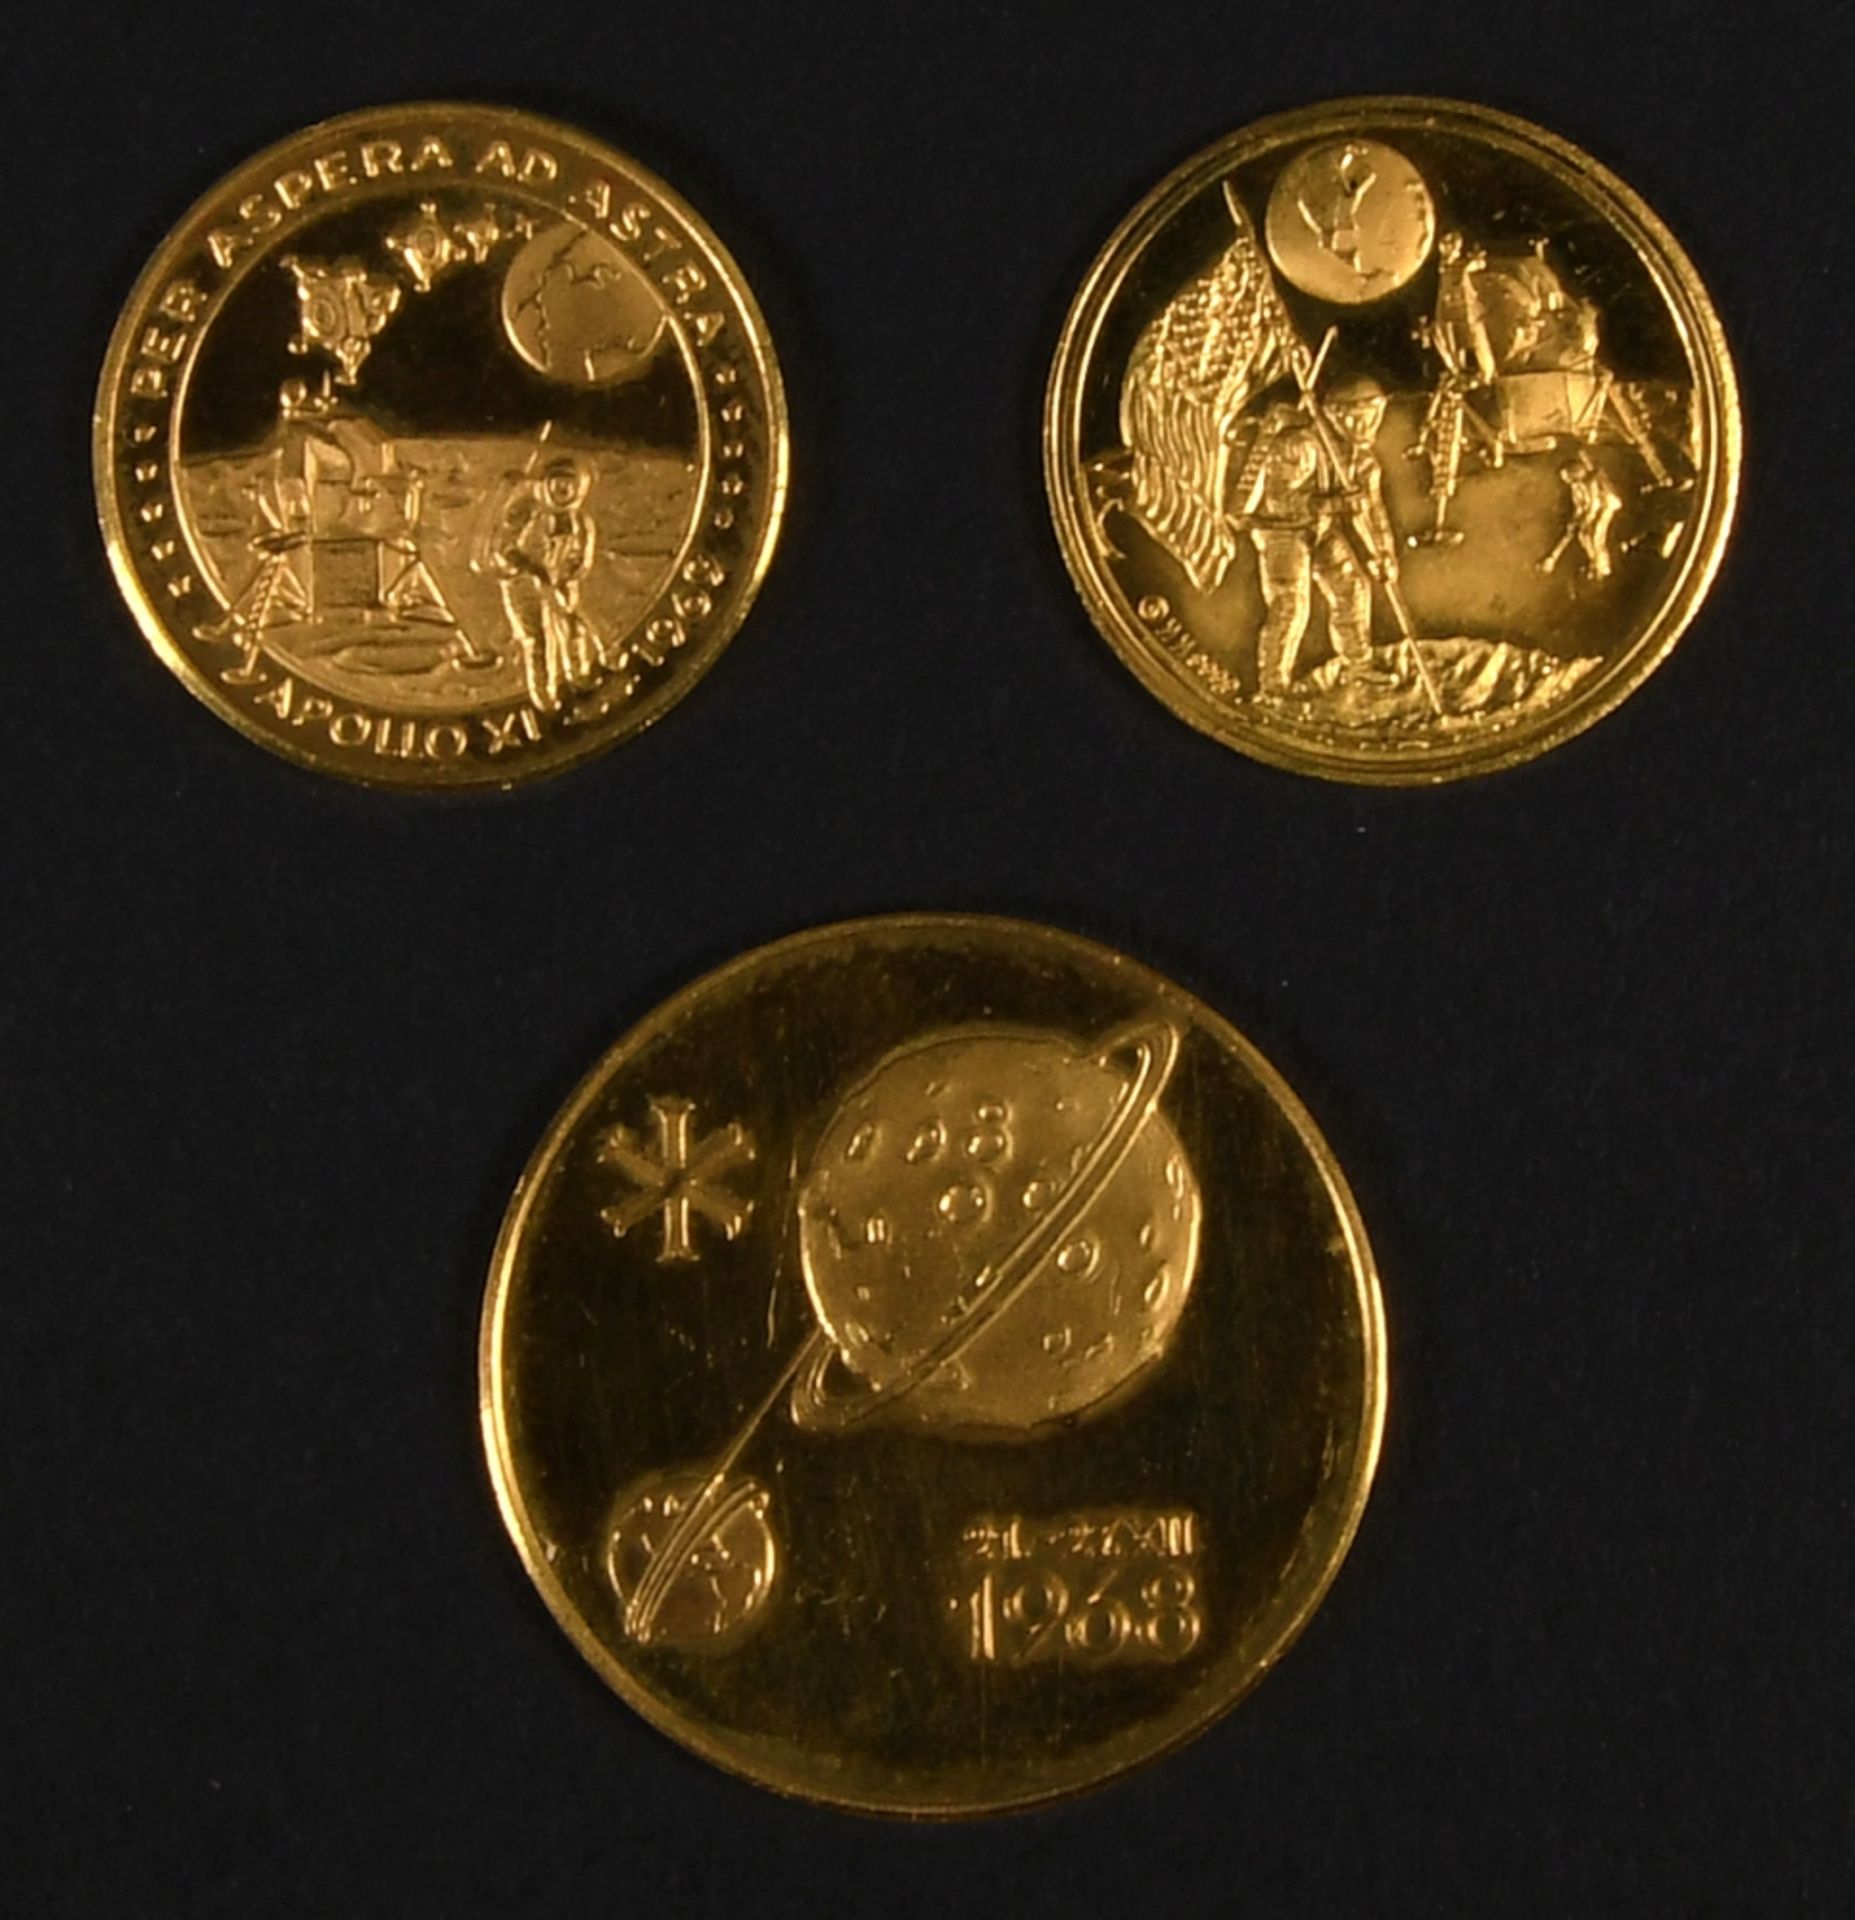 Goldmedaillen, 3 Stück - Mondumrundung und Mondlandung, 1968/69 - Bild 3 aus 3